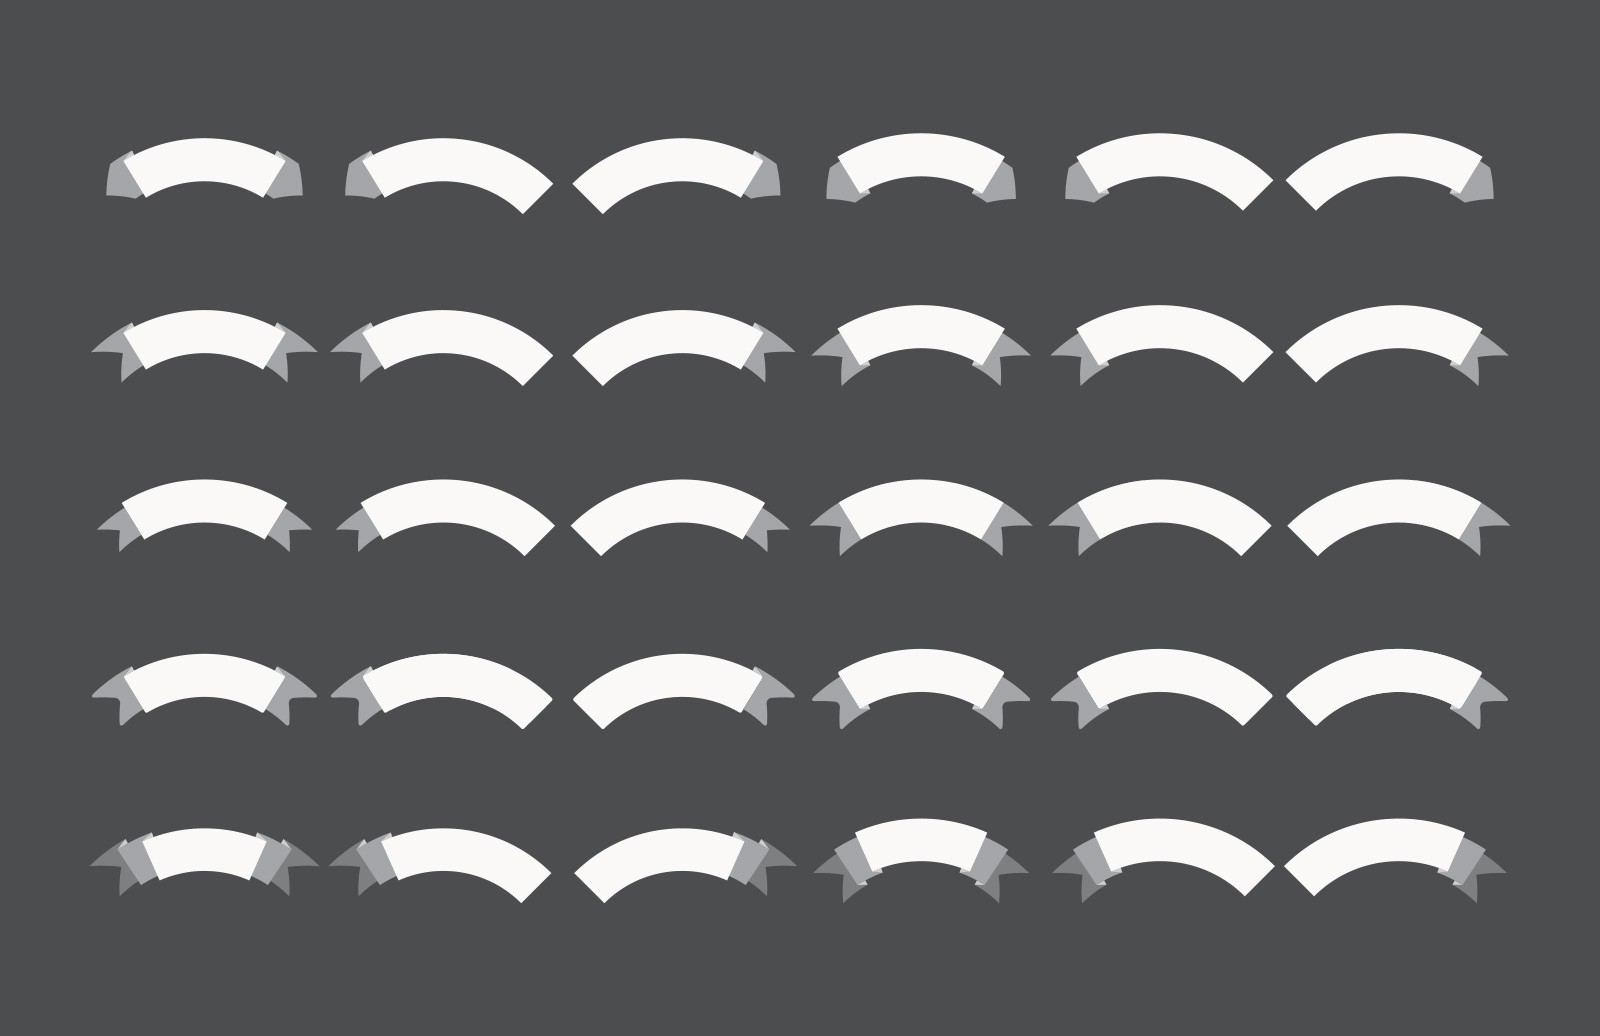 60个彩带形状 AI 笔刷 60 Illustrator Ribbon Brushes插图(1)